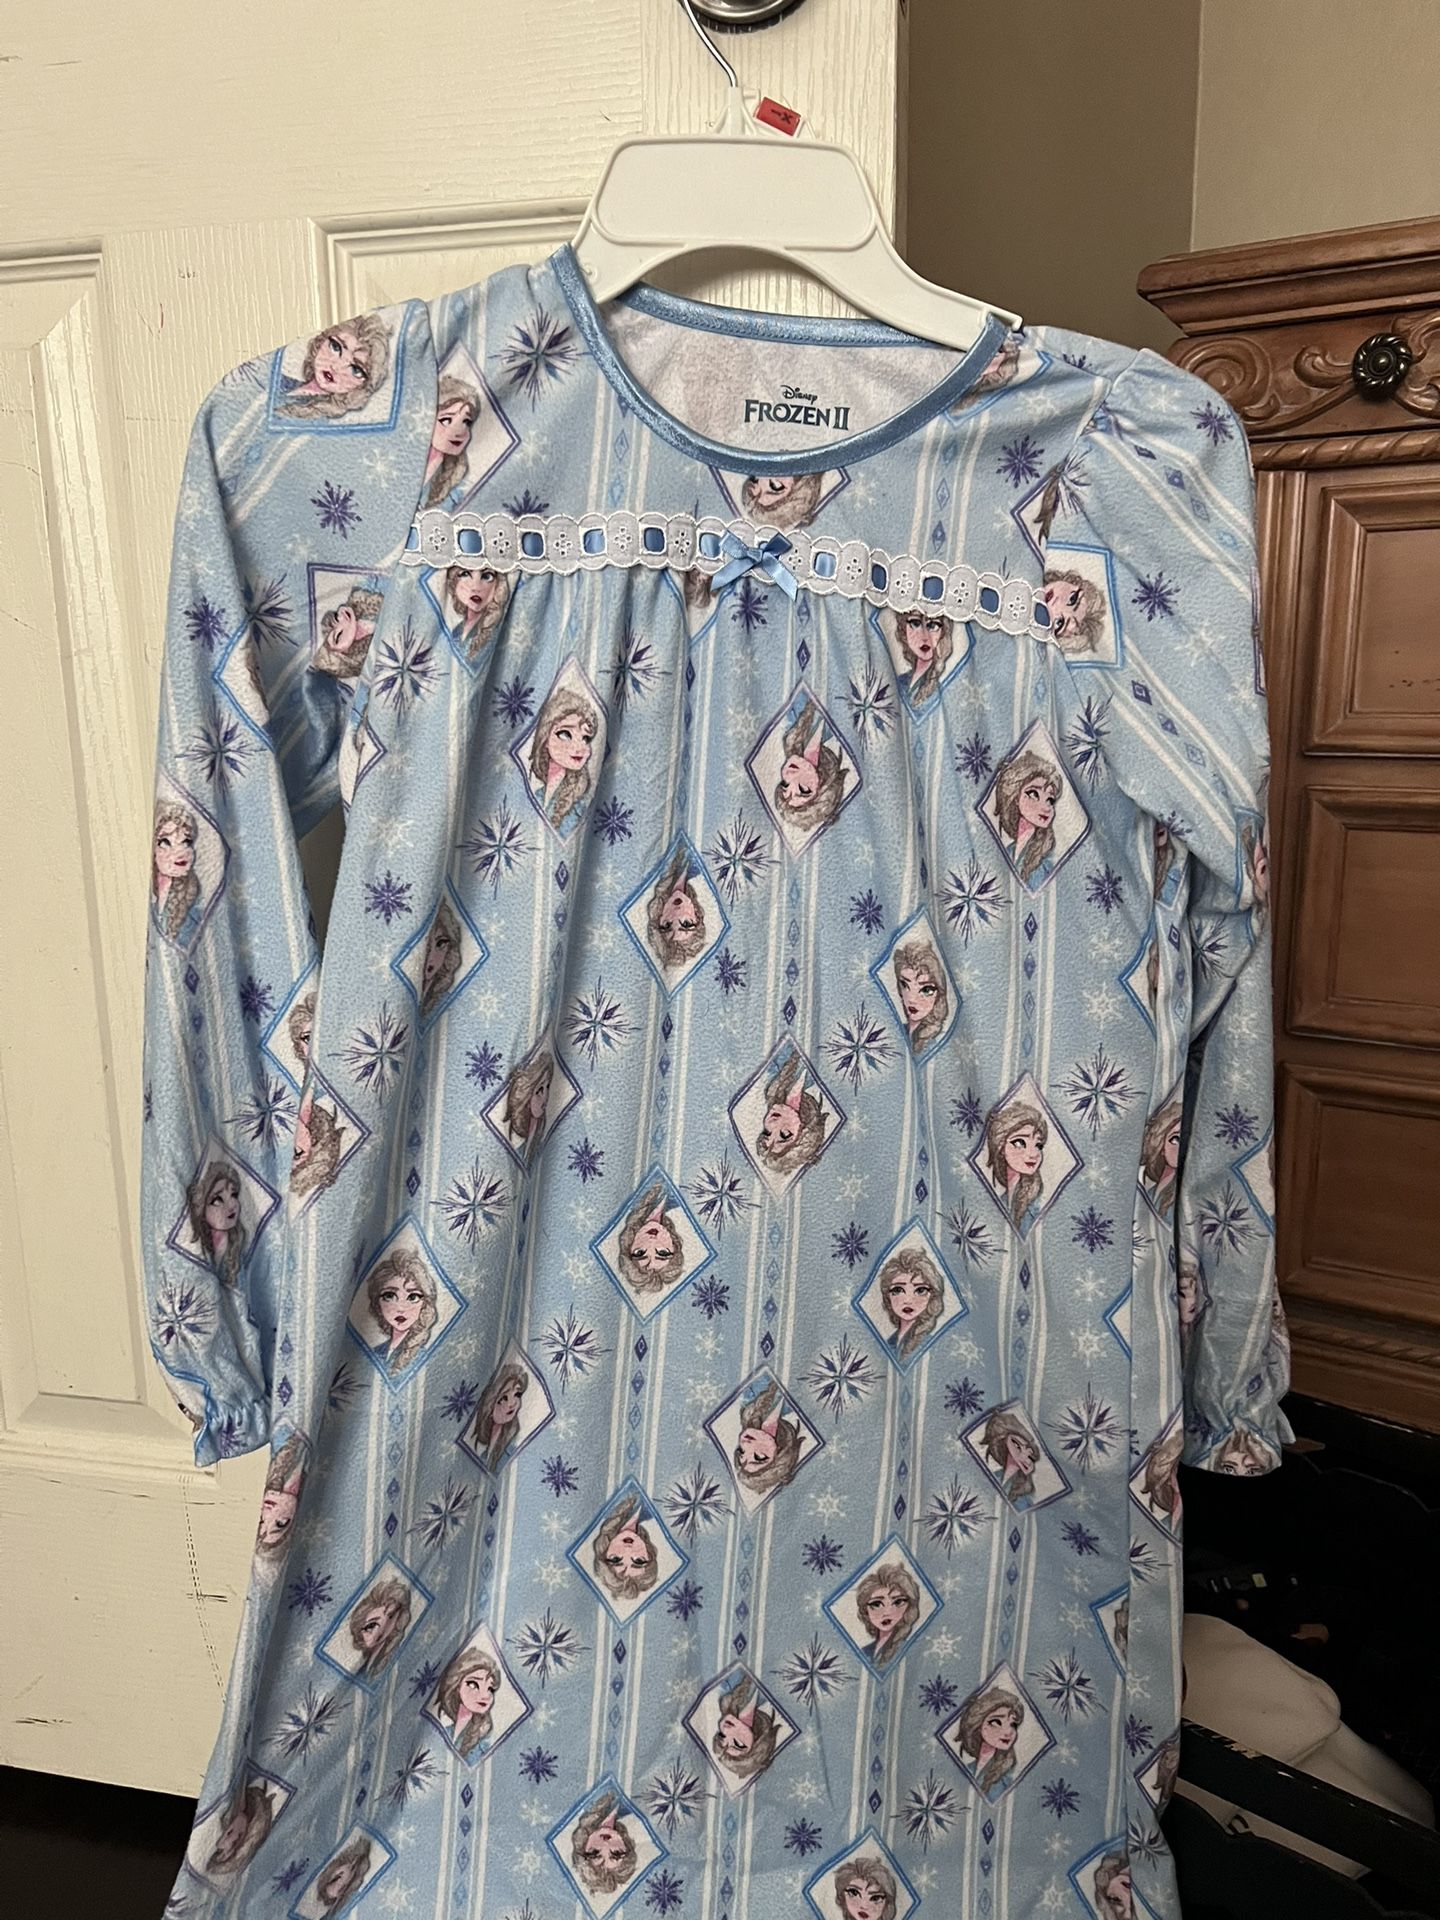 Flannel Frozen Nightgown 